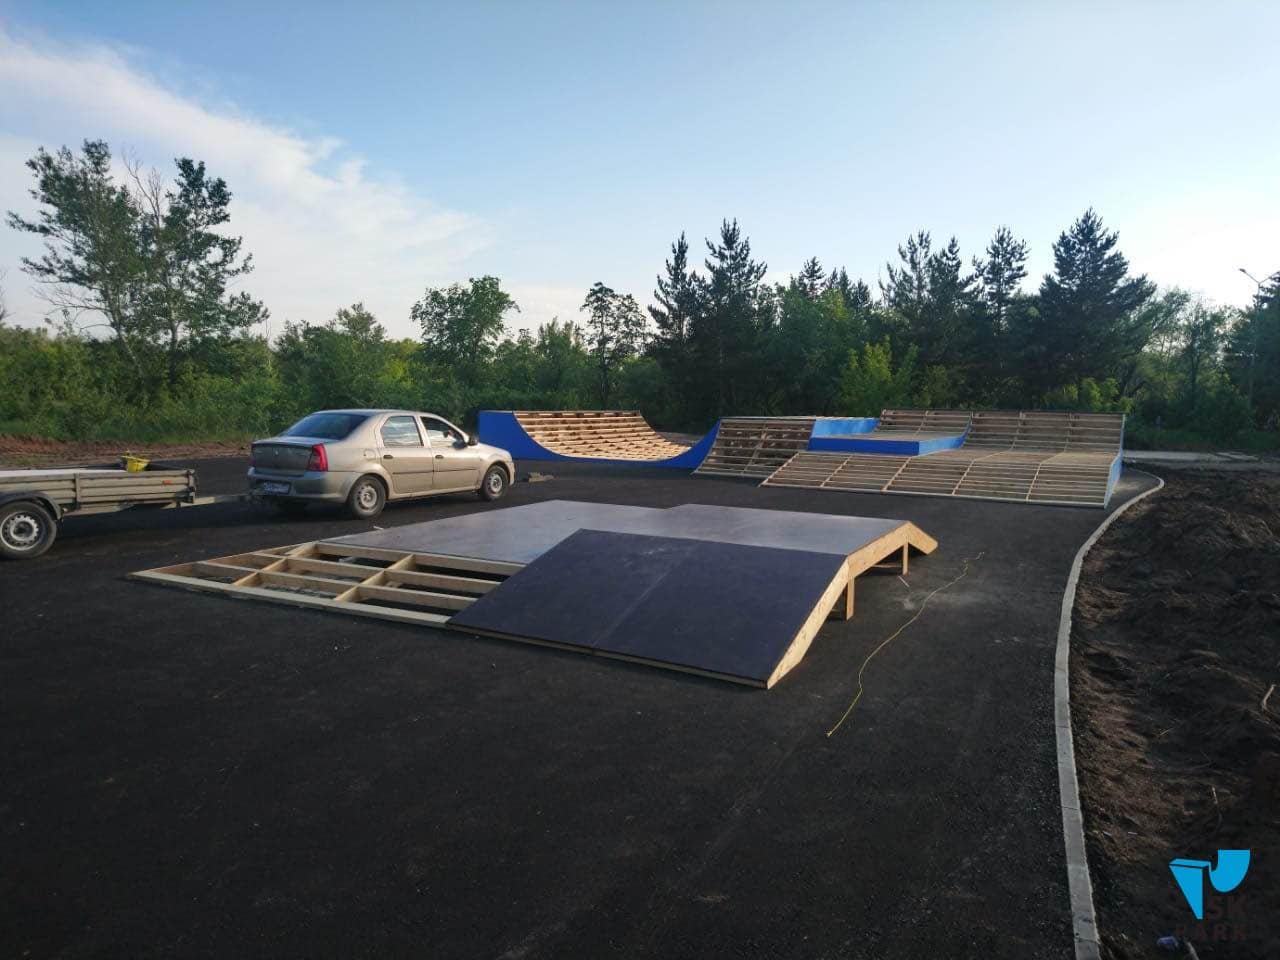 Компания SK PARK ведет строительство скейтпарка в г. Караганде, РК